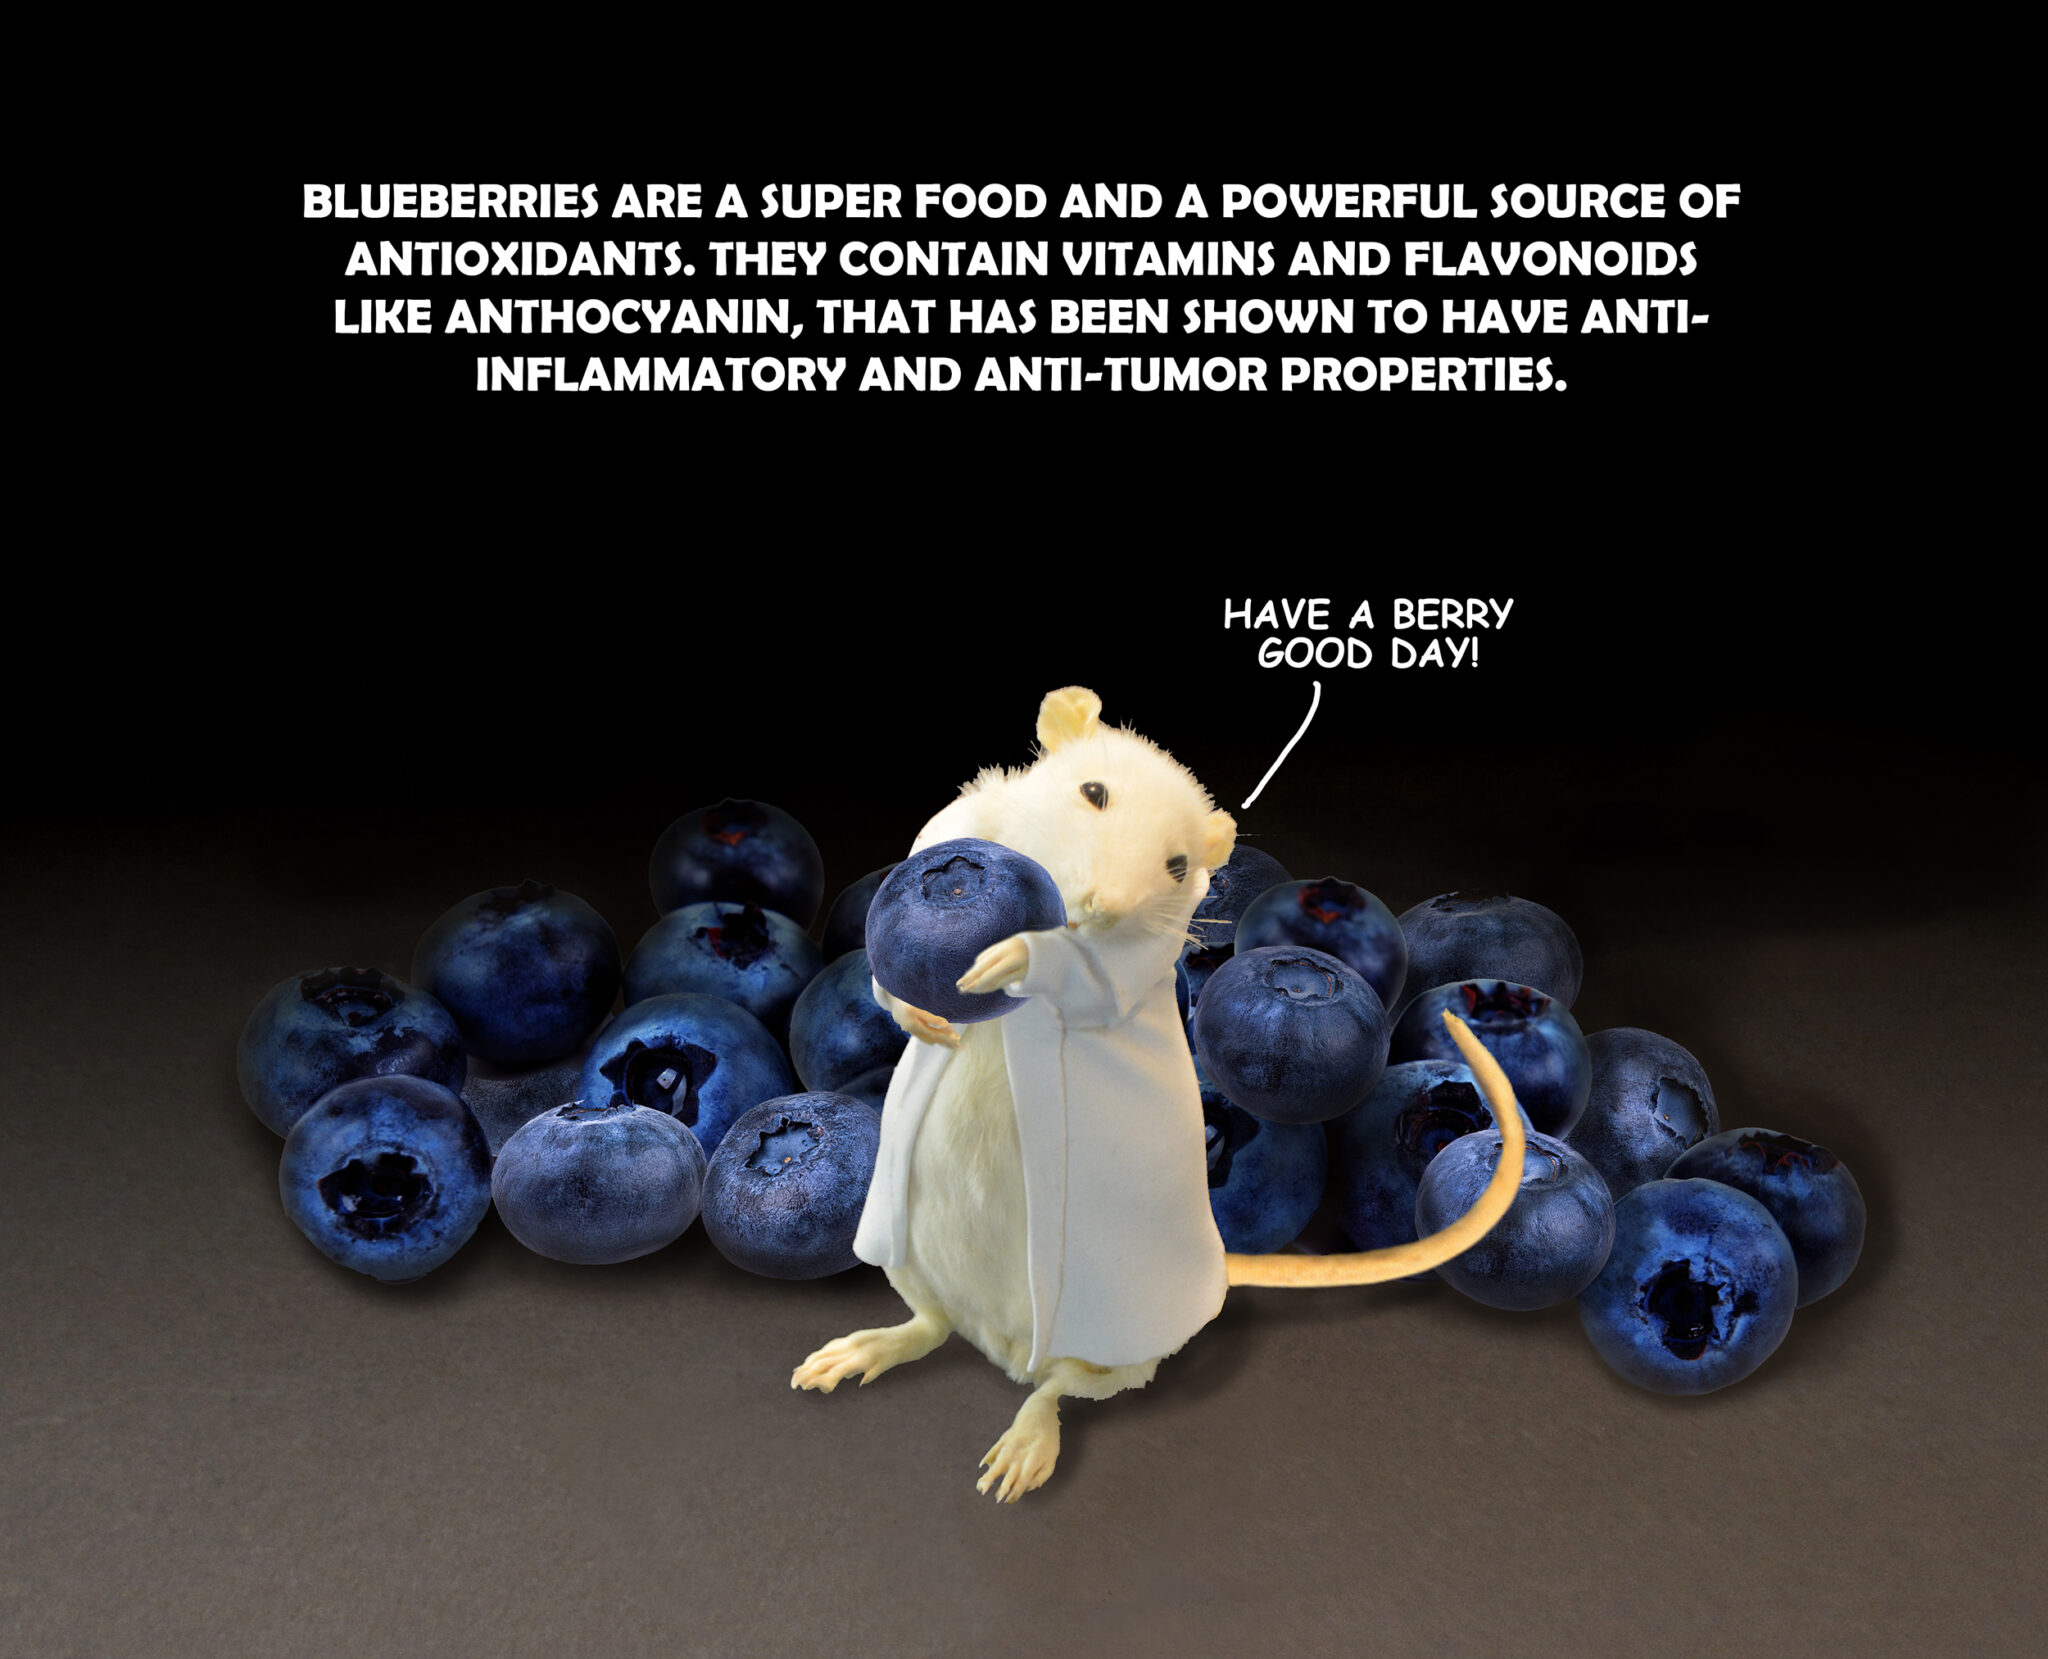 H R loves blueberries